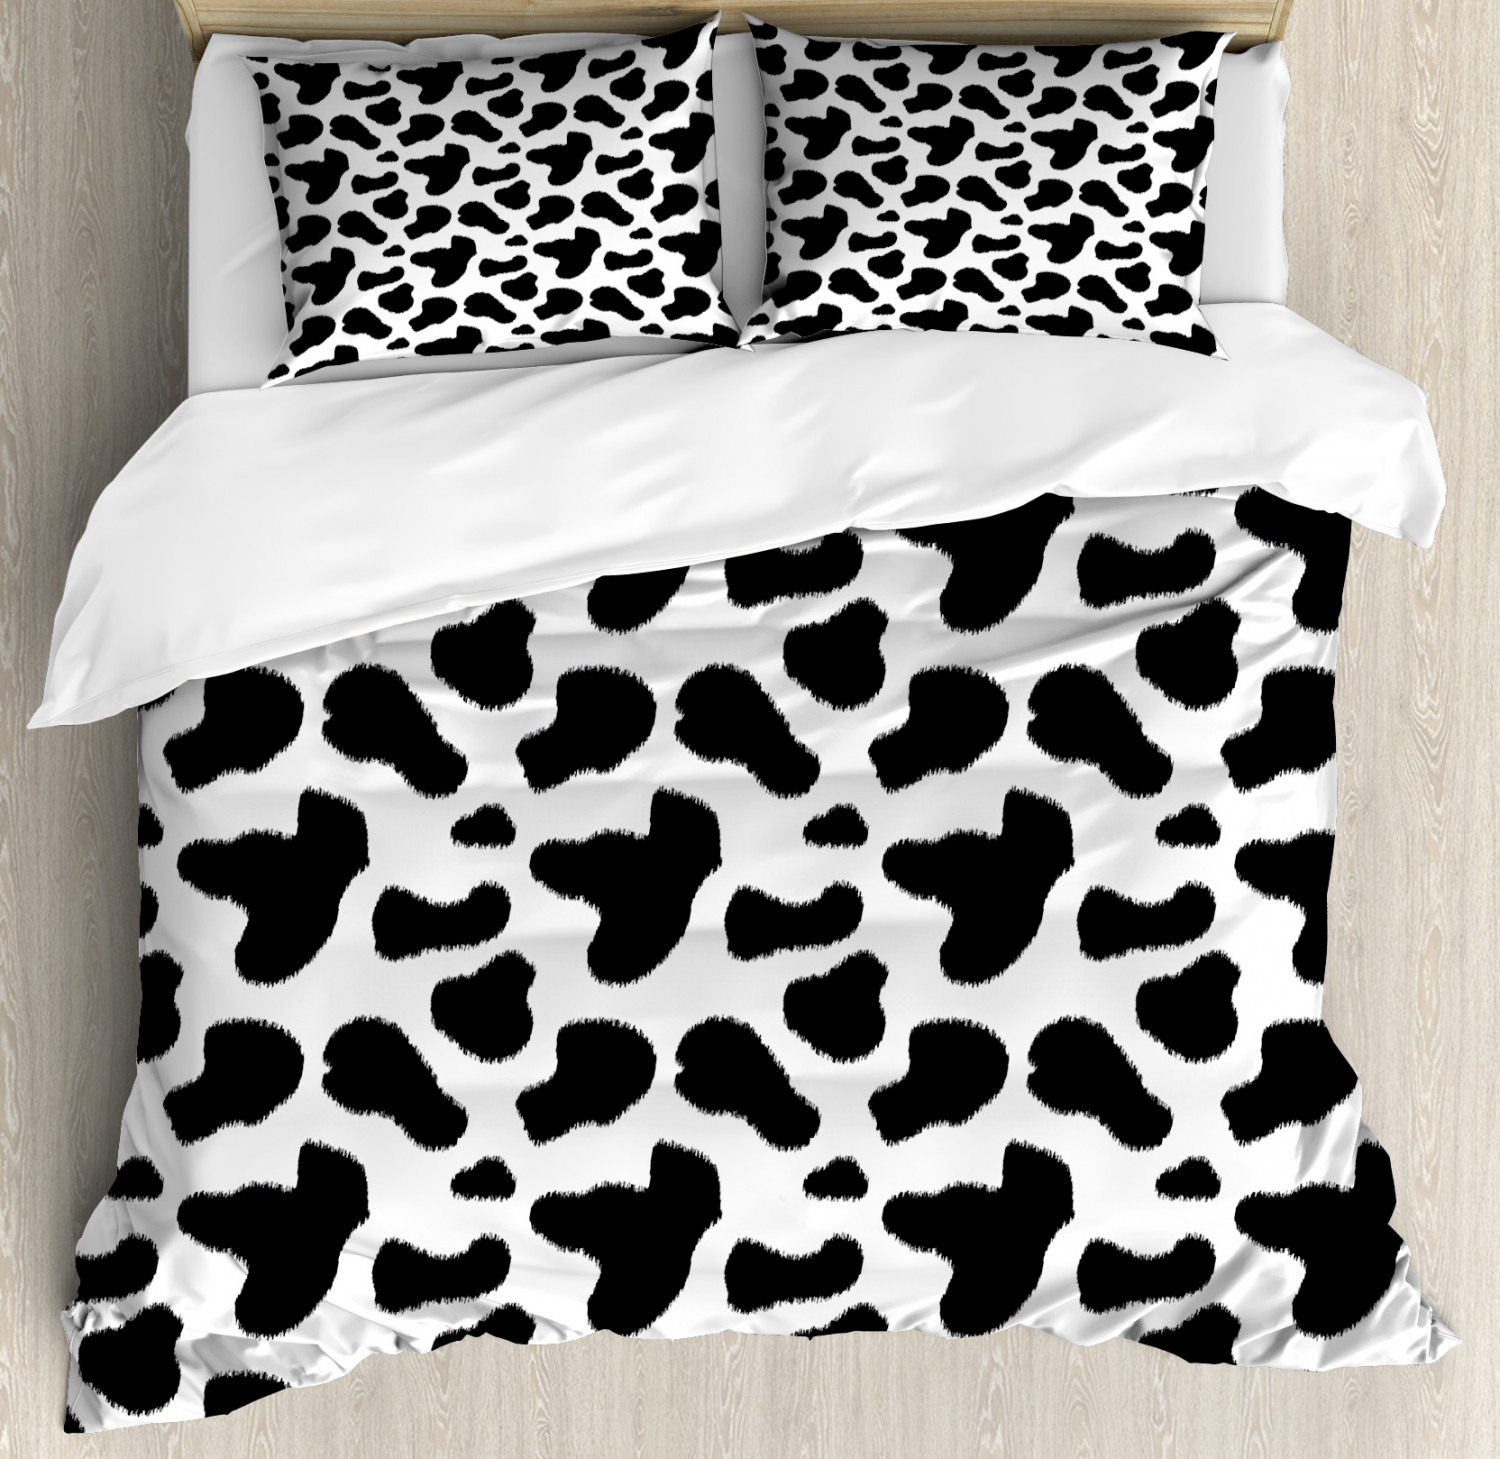 Cow Print Duvet Cover Set With Pillow Shams Cow Hide Black Spots